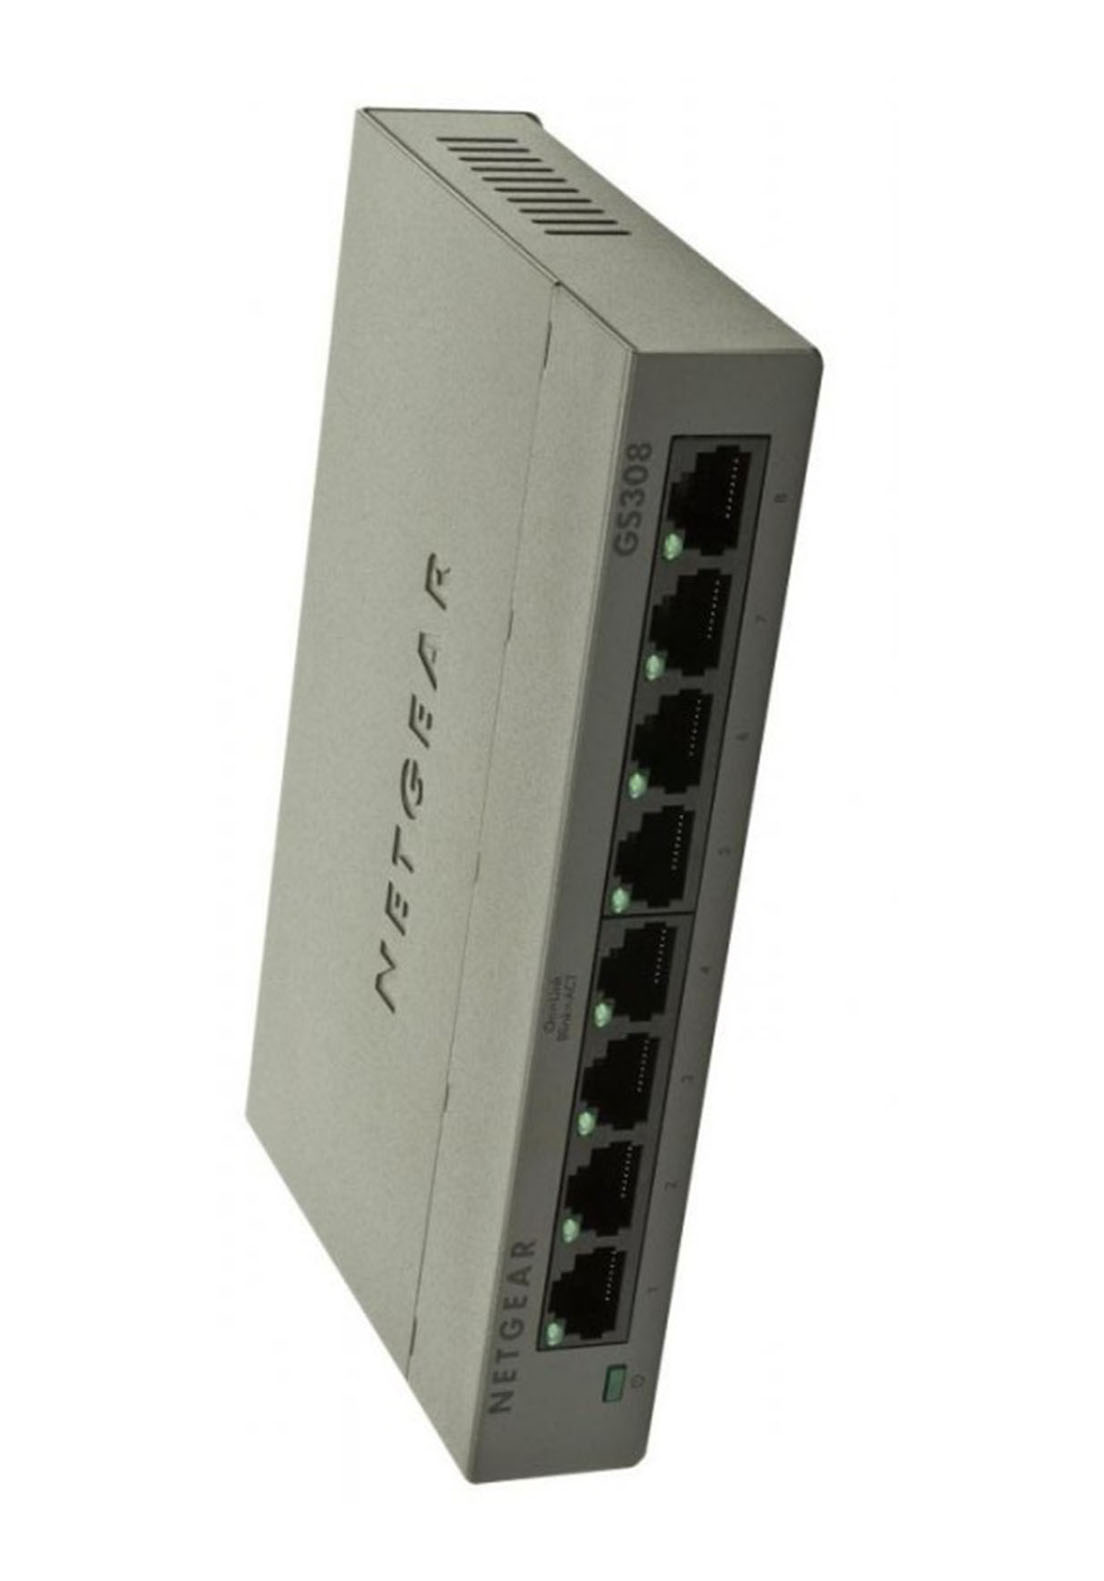 NETGEAR GS308 Ethernet Switch: Network Simplified